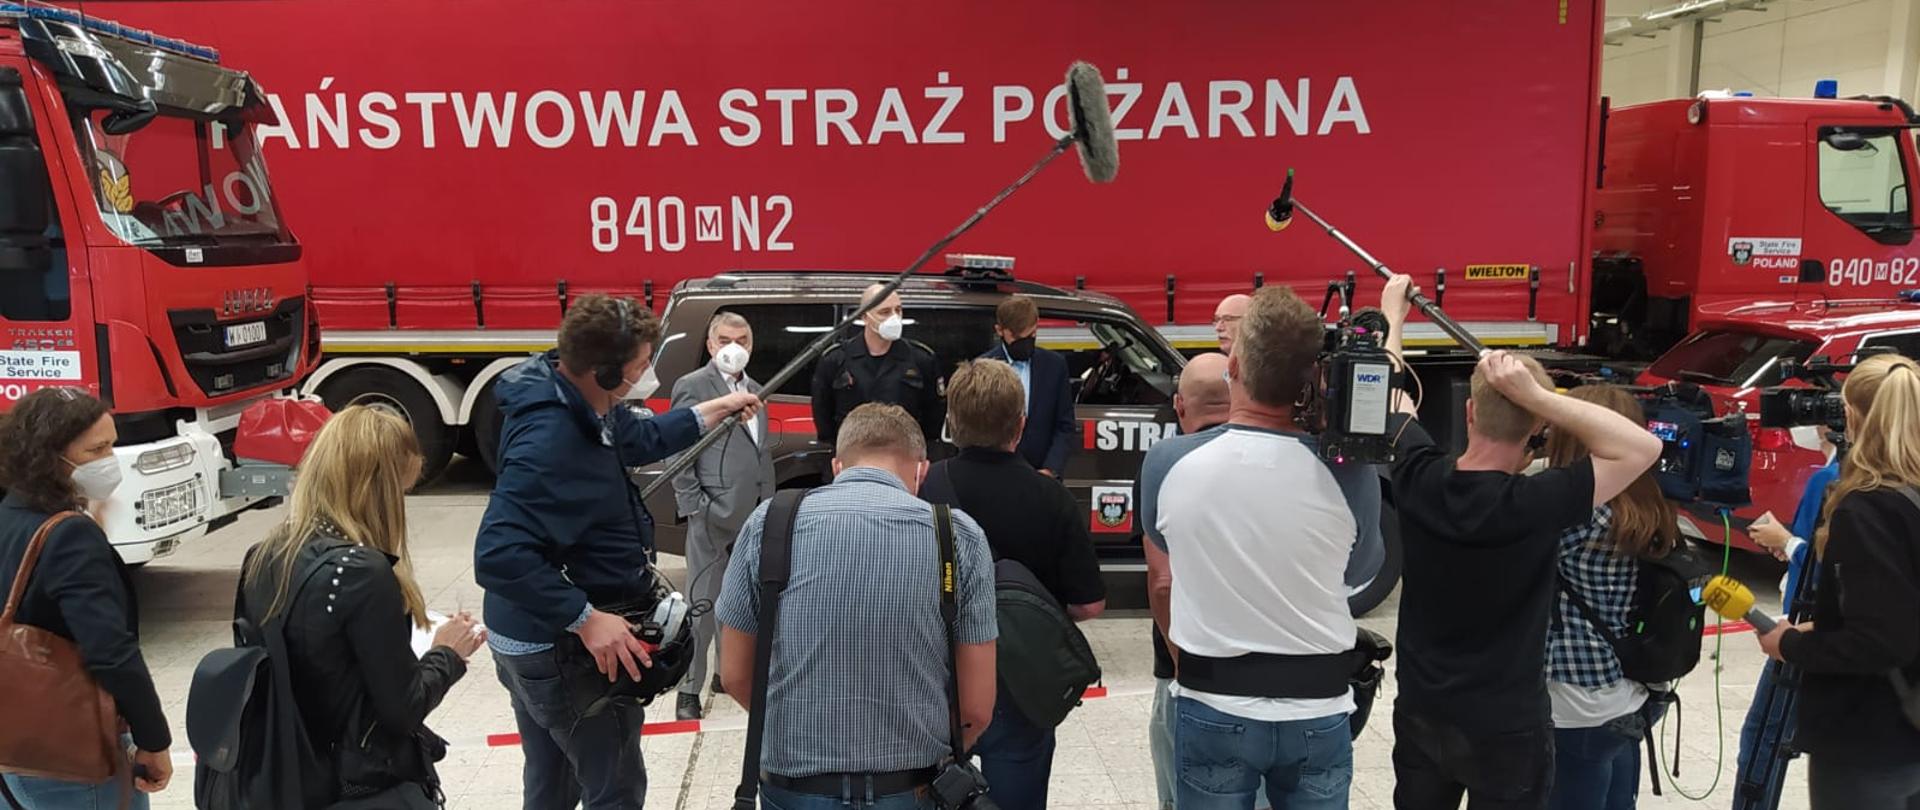 polska pomoc humanitarna dotarła do Niemiec